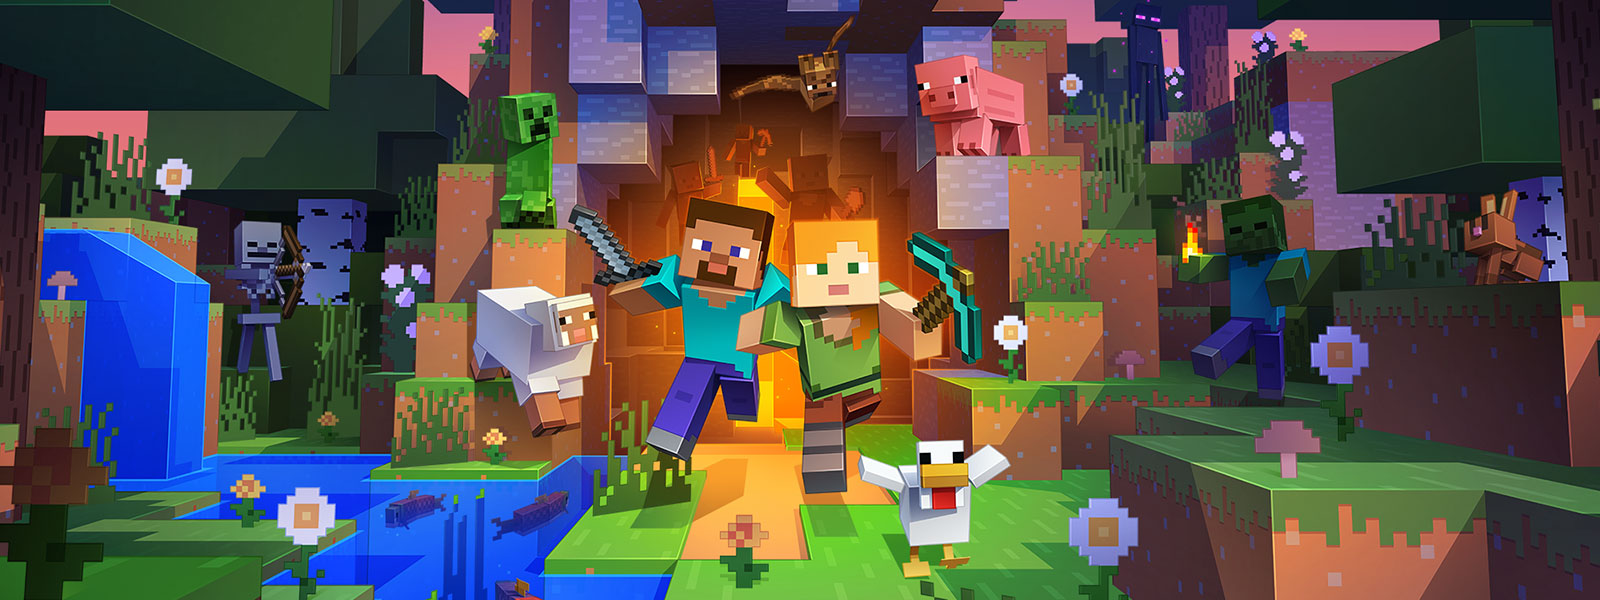 Dve postavy vychádzajú z tunela a okolo sú rôzne postavy zo sveta Minecraft